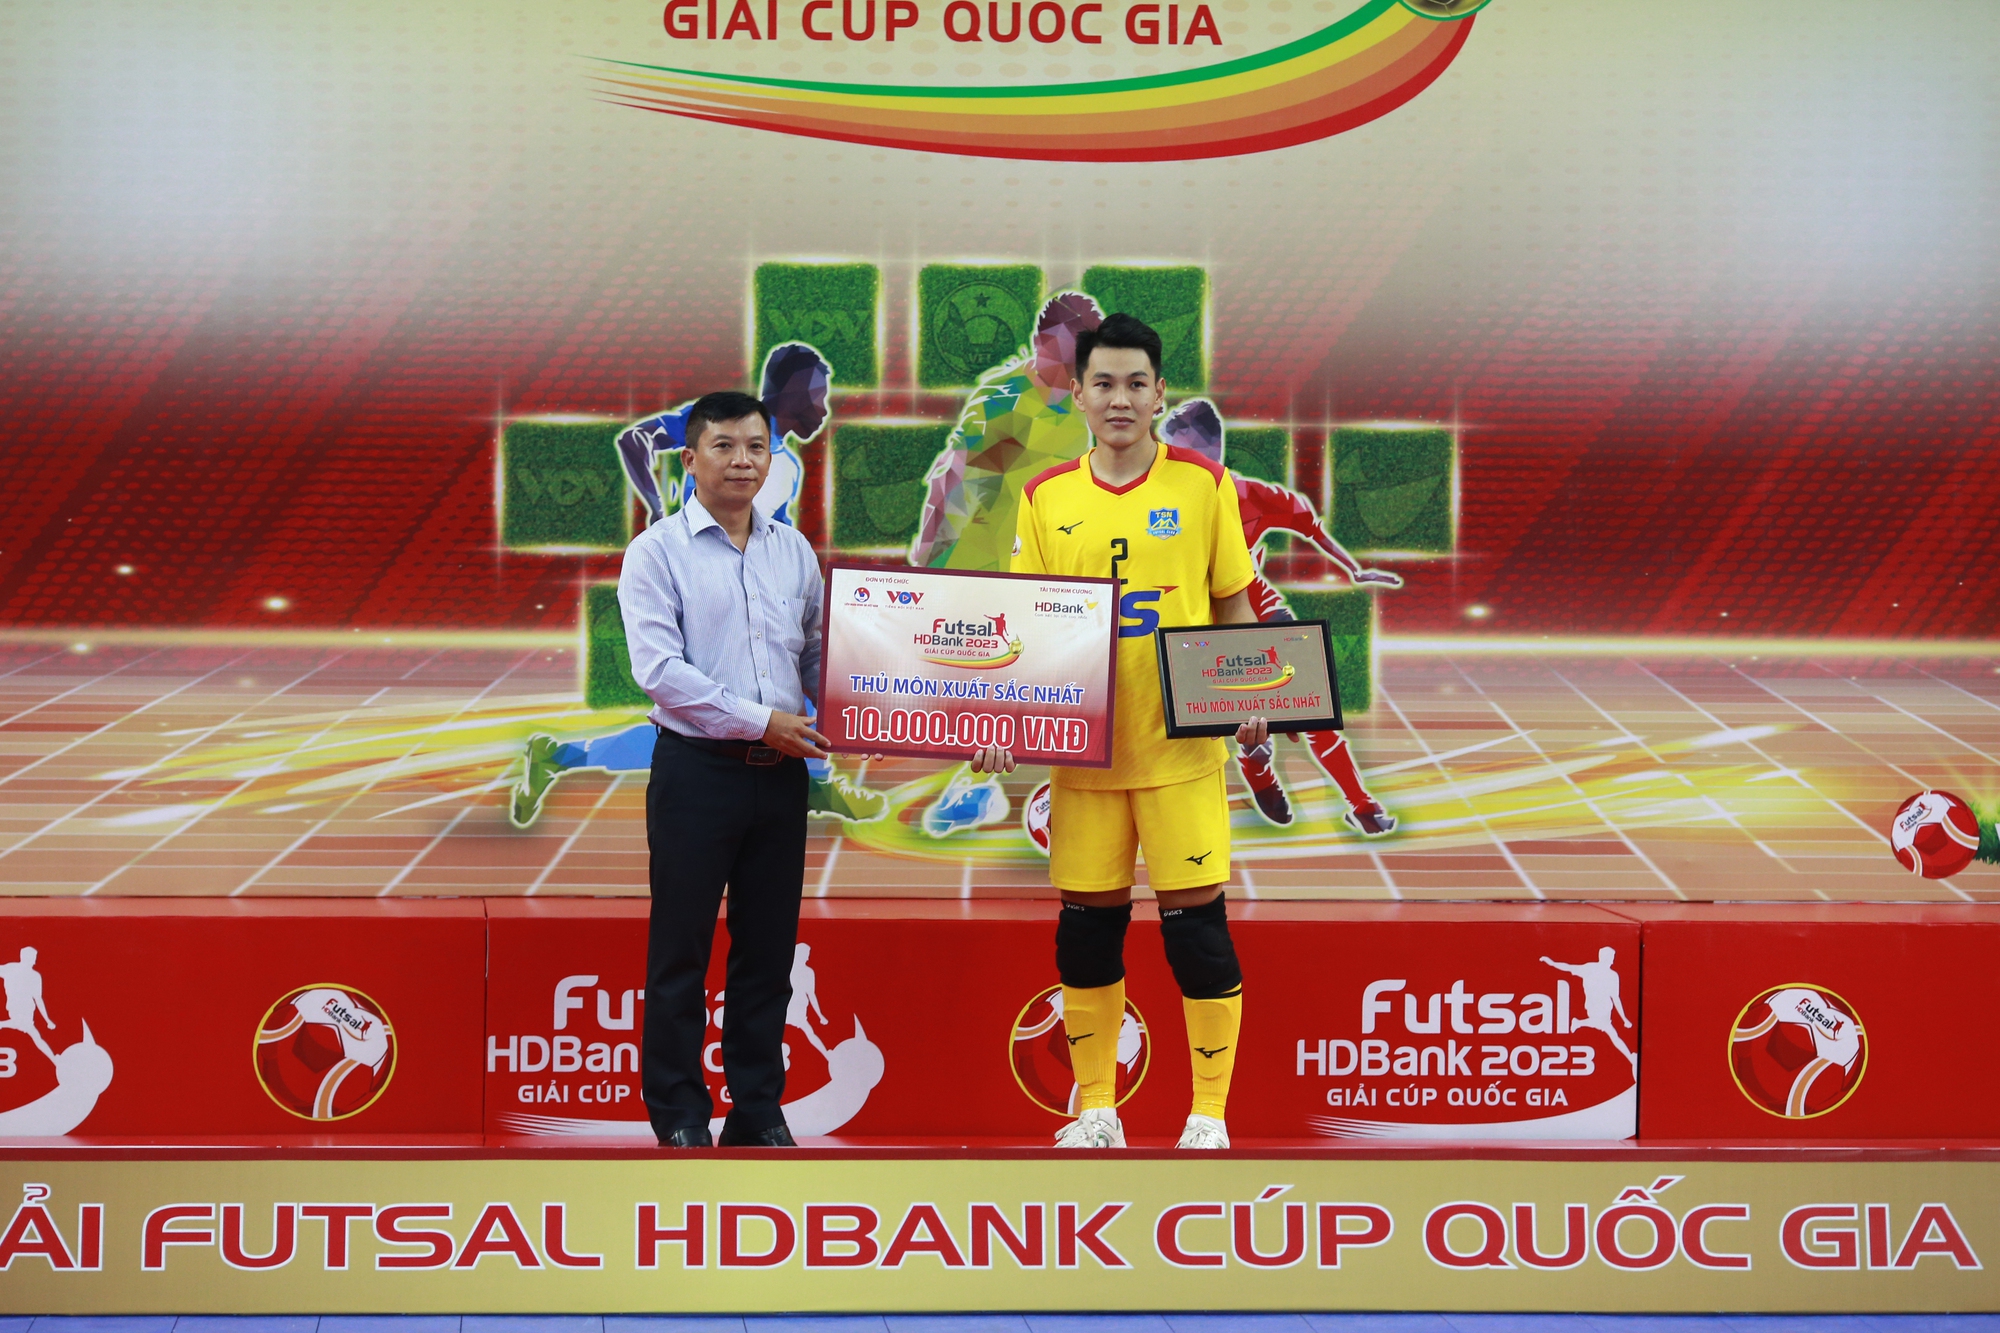 Futsal Cúp quốc gia 2023: Thái Sơn Nam vô địch, hoàn tất cú đúp danh hiệu - Ảnh 9.